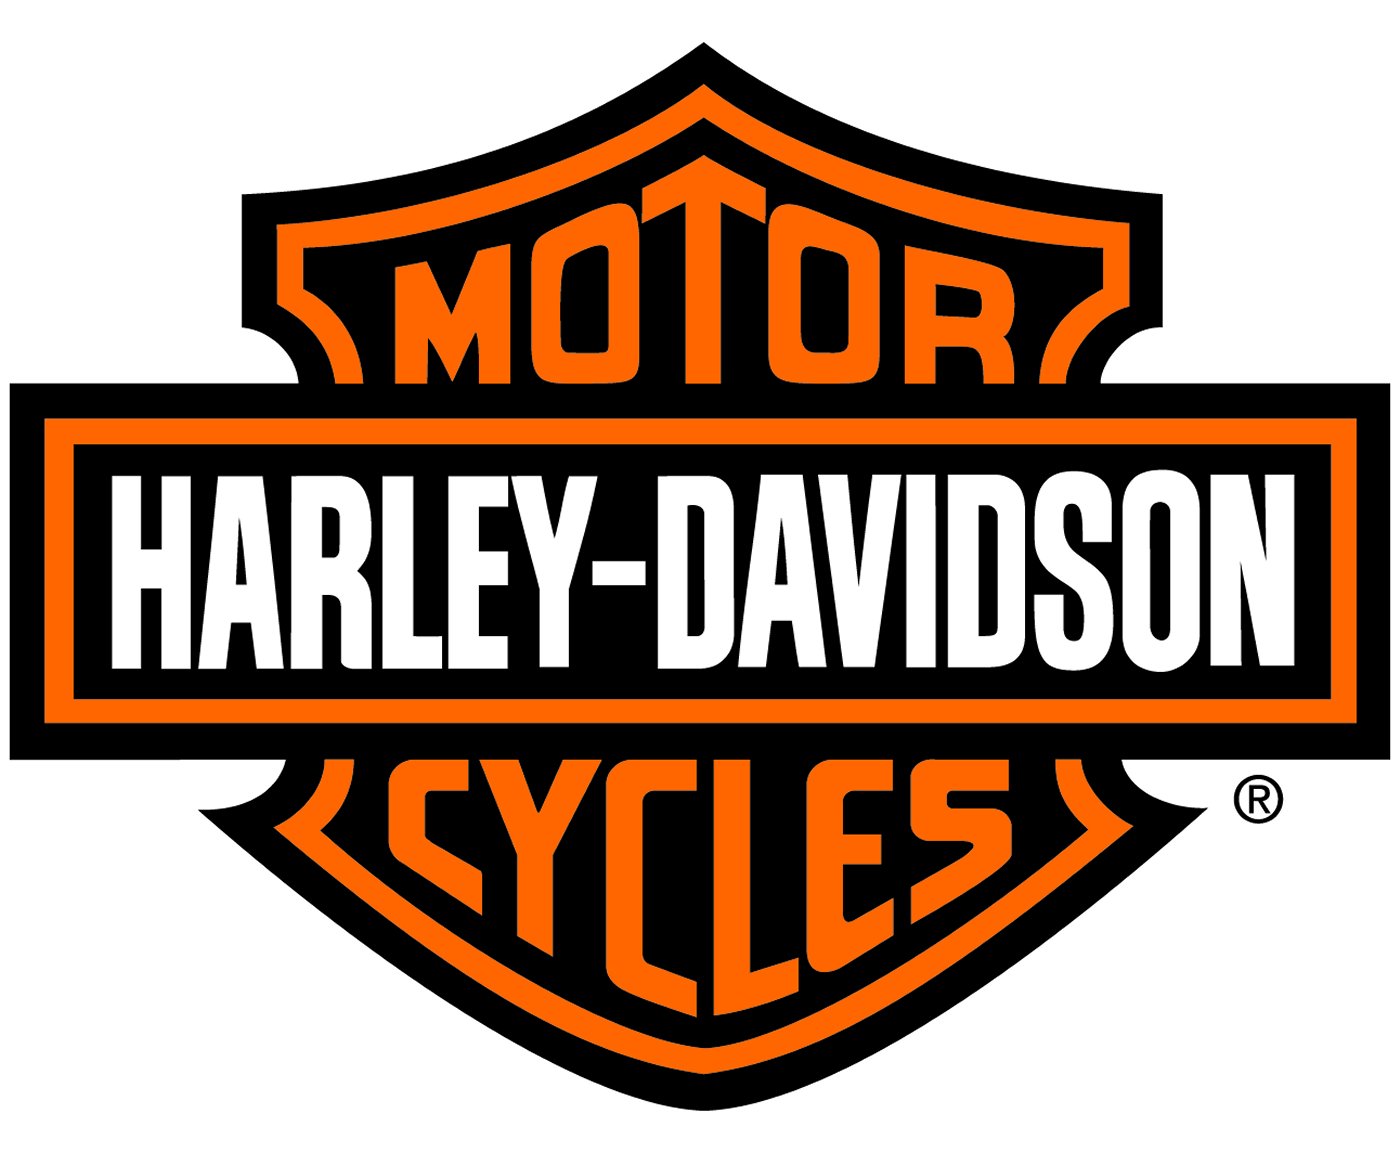 Prestações mais baratas e certificado de recompra. Conheça o novo plano de financiamento Harley-Davidson